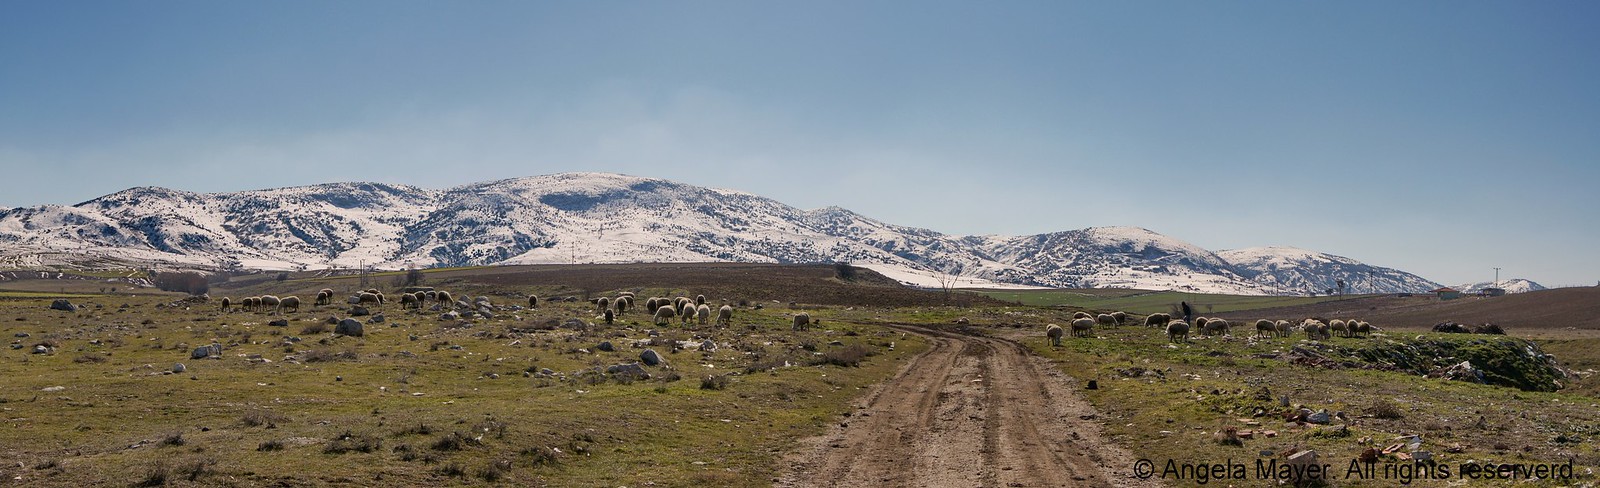 Anatolian Landscape